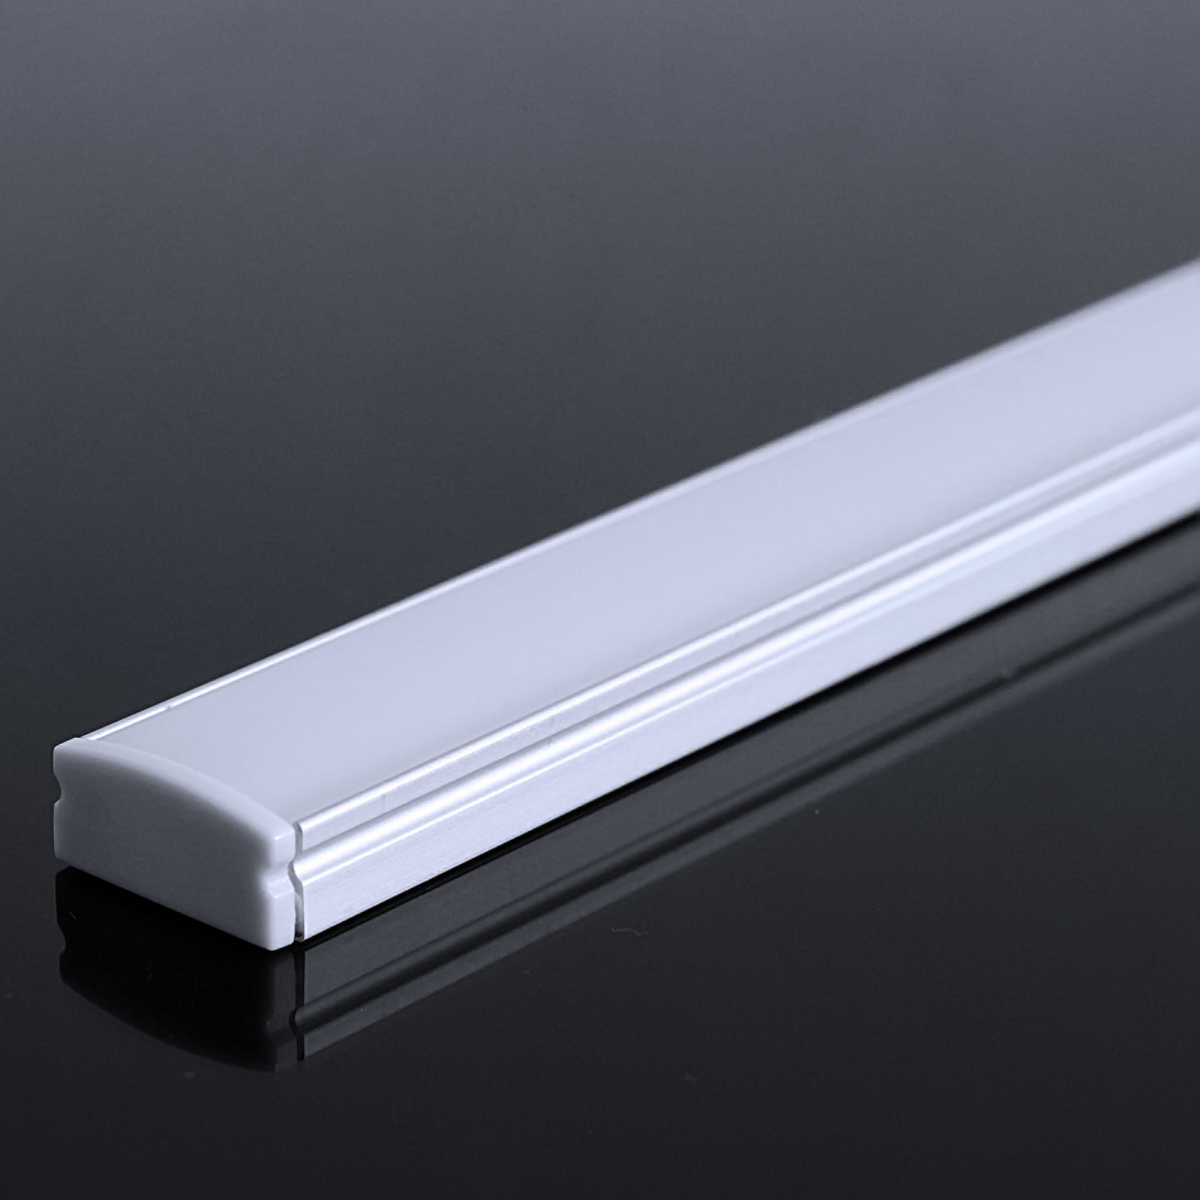 LED Flachprofil "Slim-Line" | Abdeckung diffus | Zuschnitt auf 138cm |